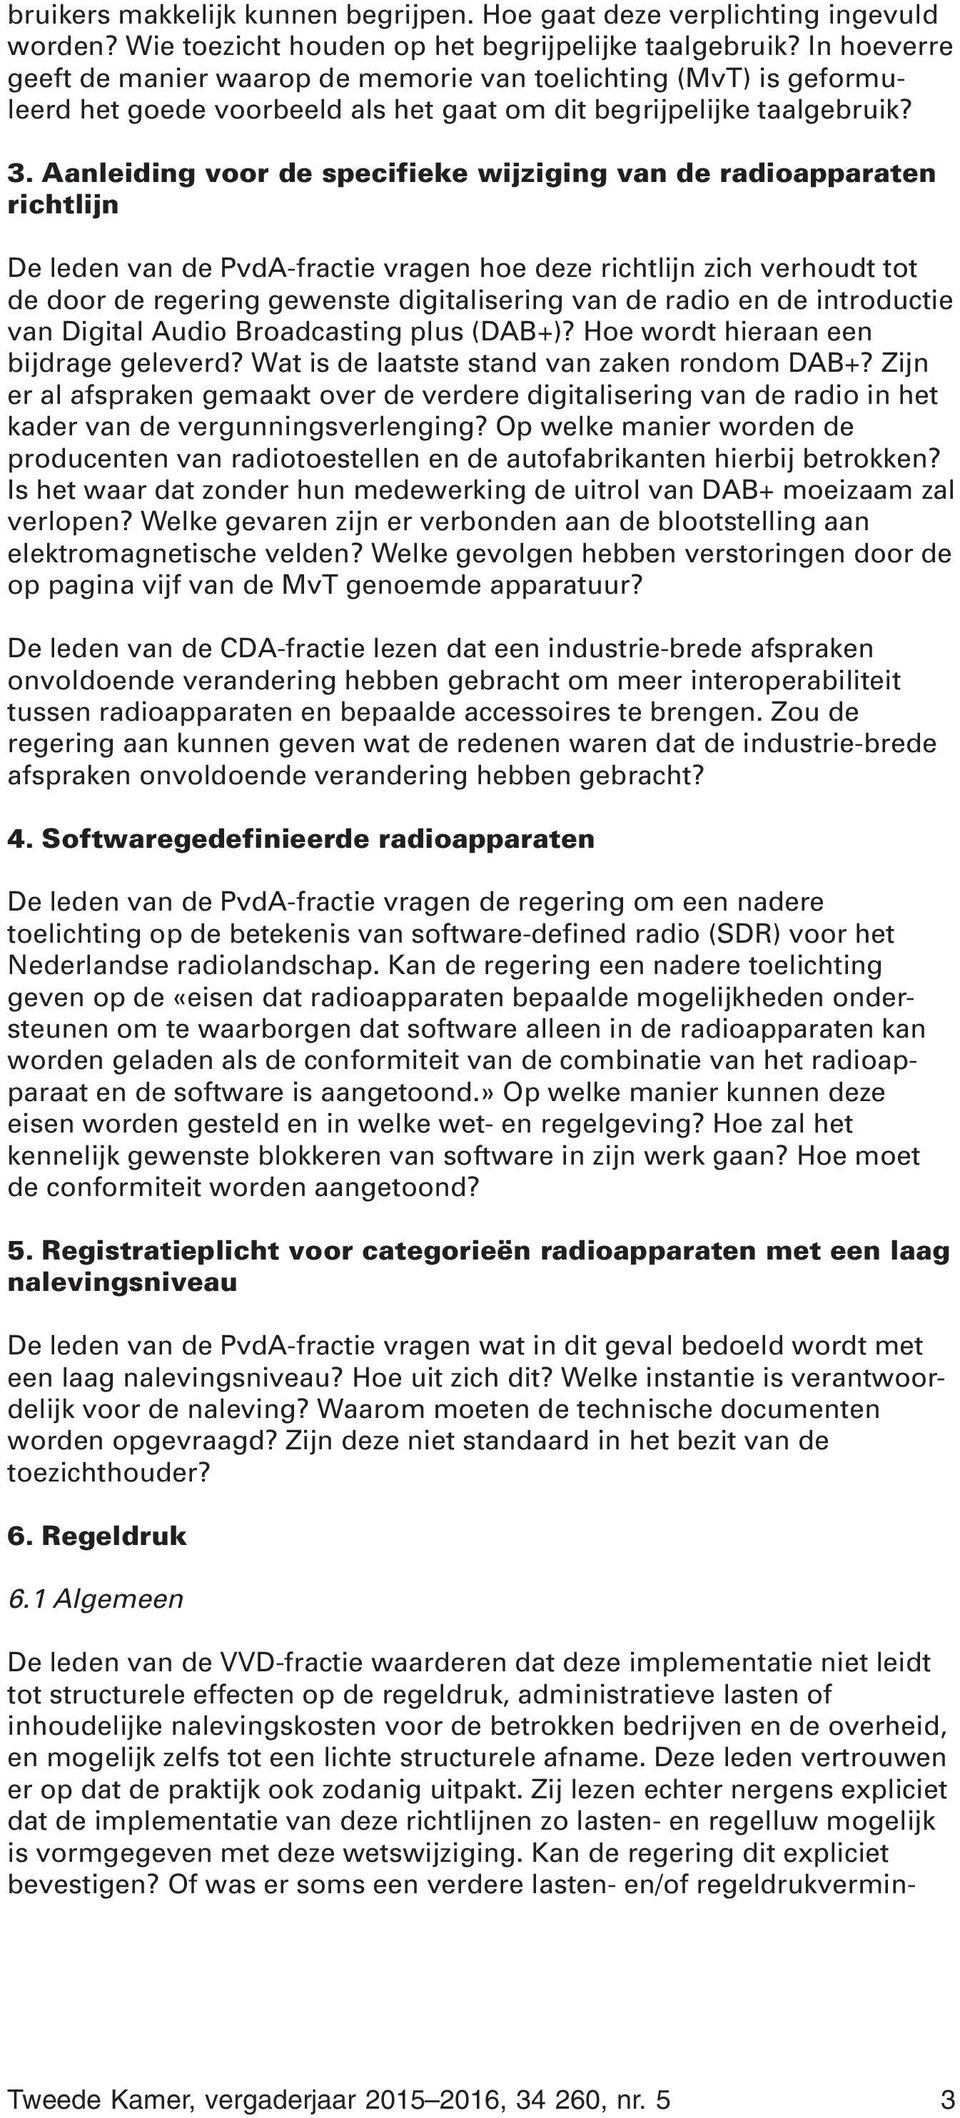 Aanleiding voor de specifieke wijziging van de radioapparaten richtlijn De leden van de PvdA-fractie vragen hoe deze richtlijn zich verhoudt tot de door de regering gewenste digitalisering van de